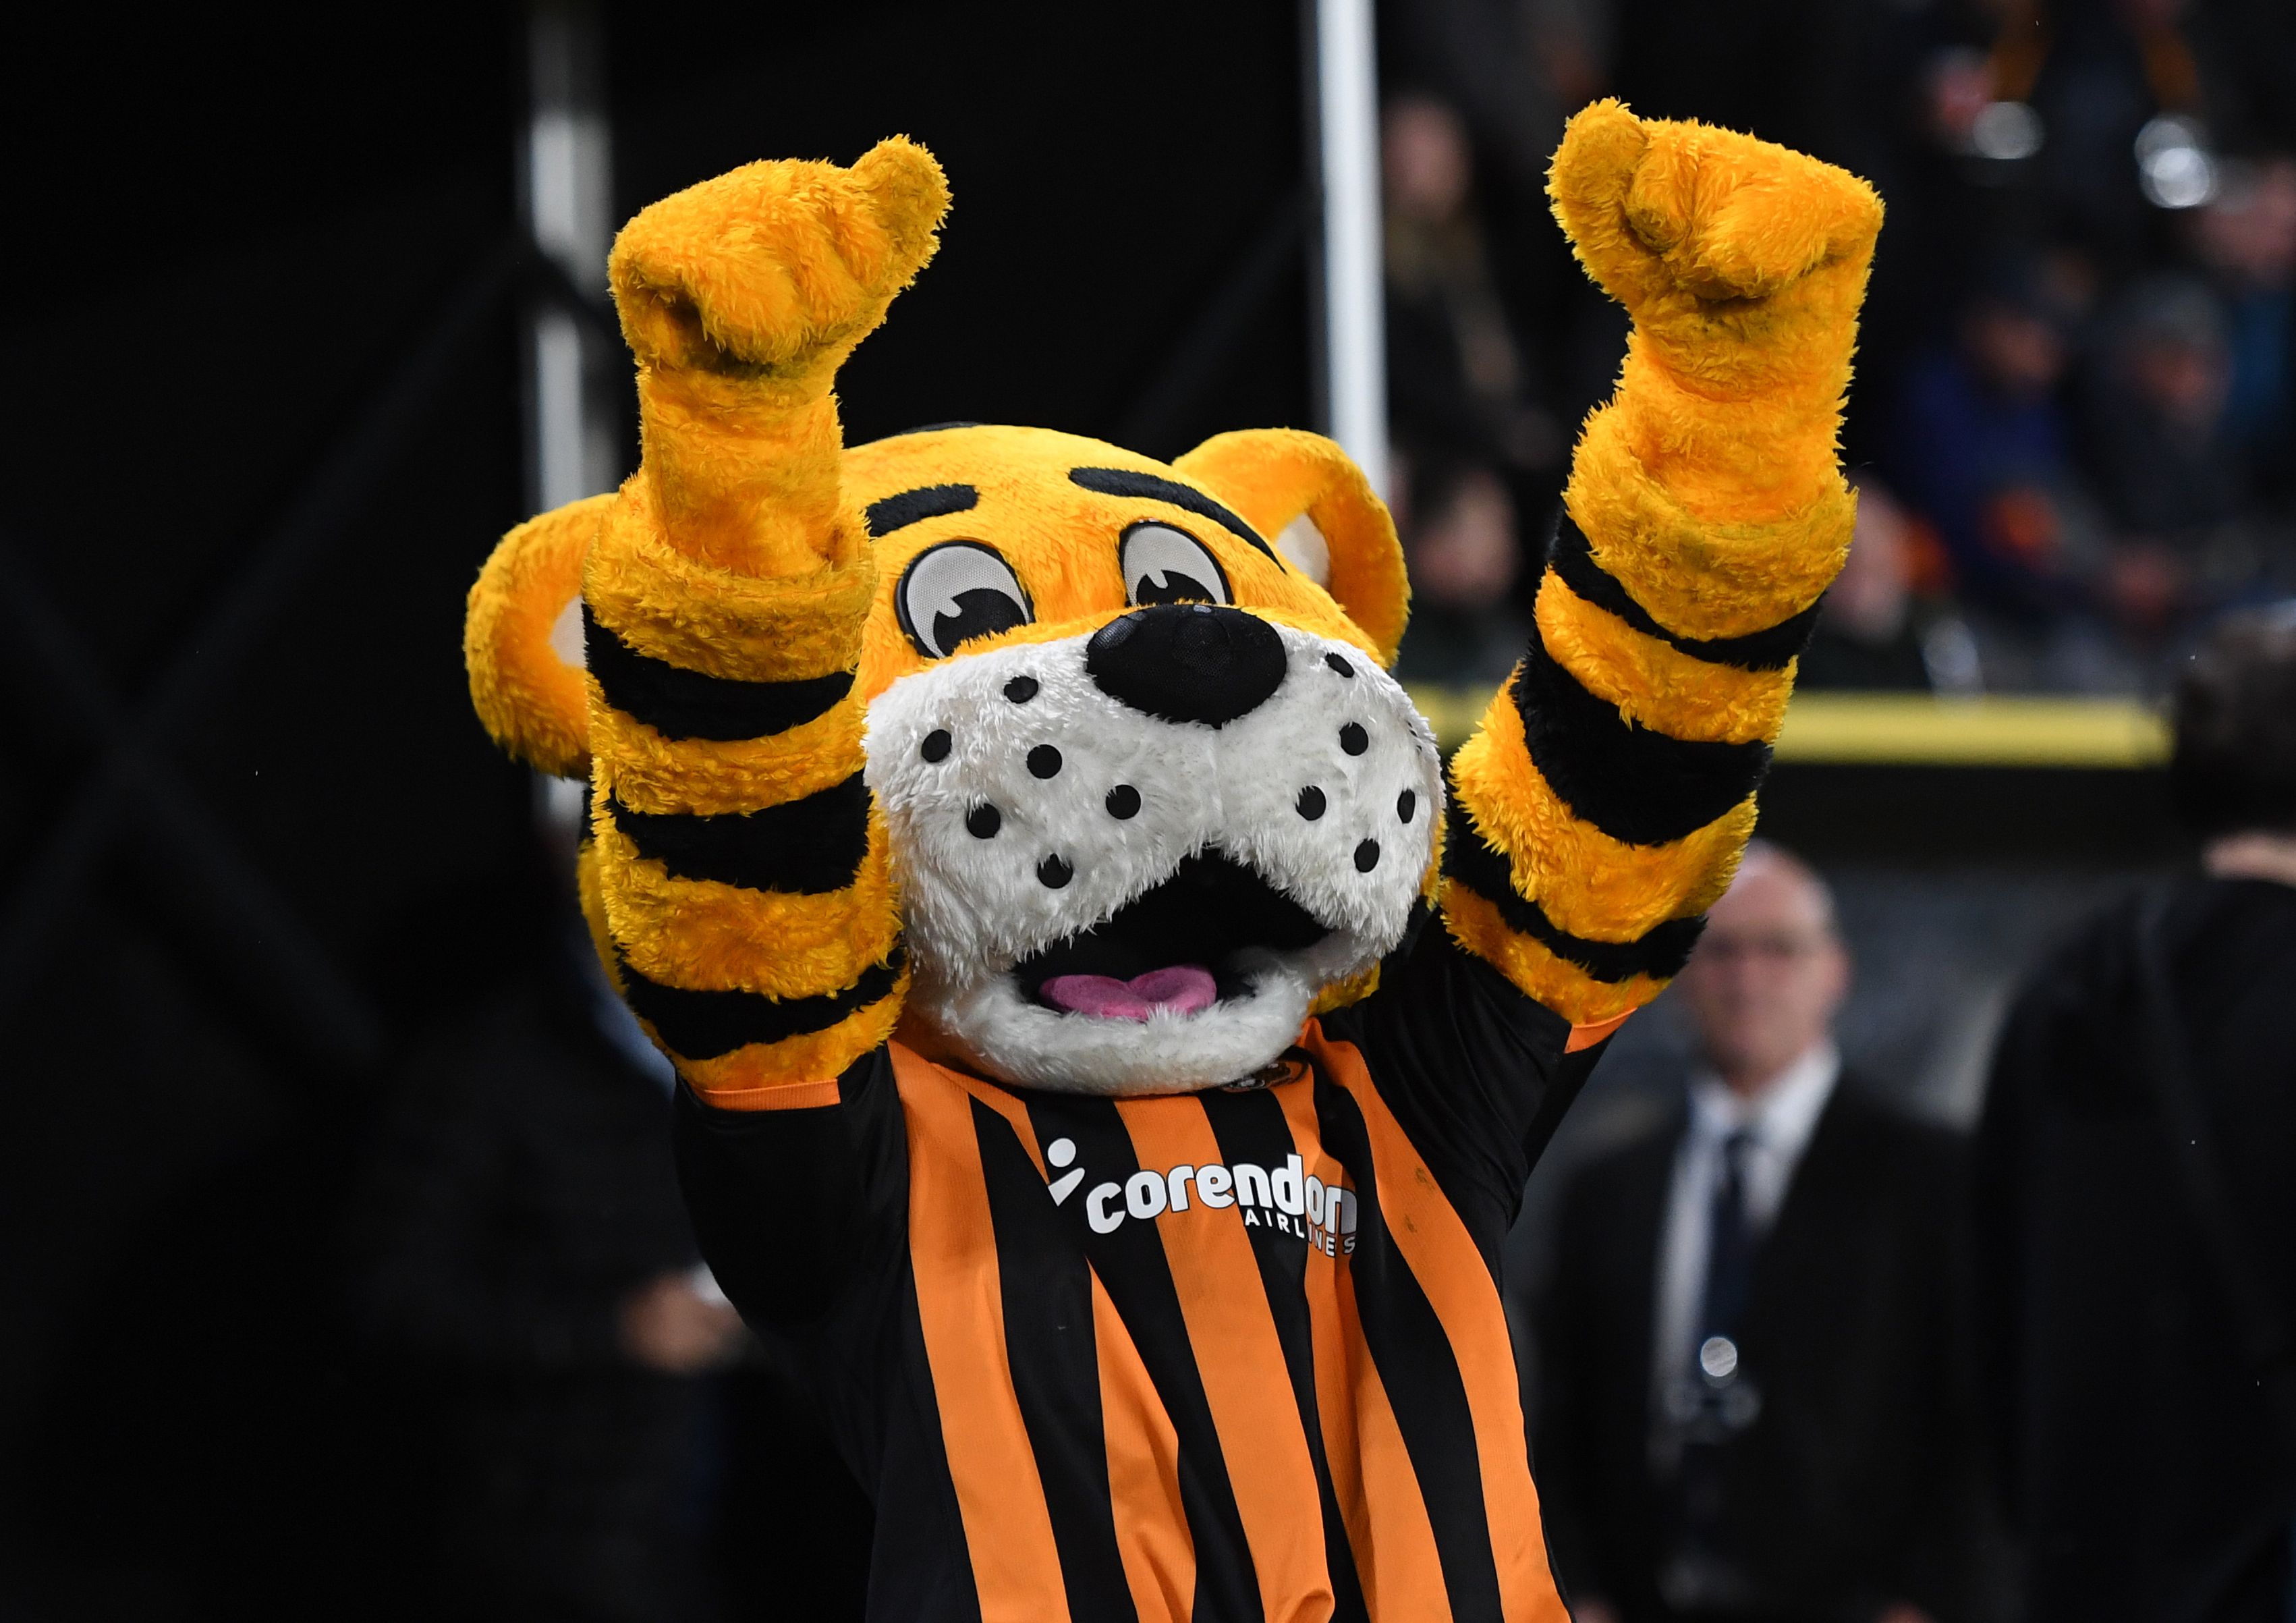 The Hull City Mascot